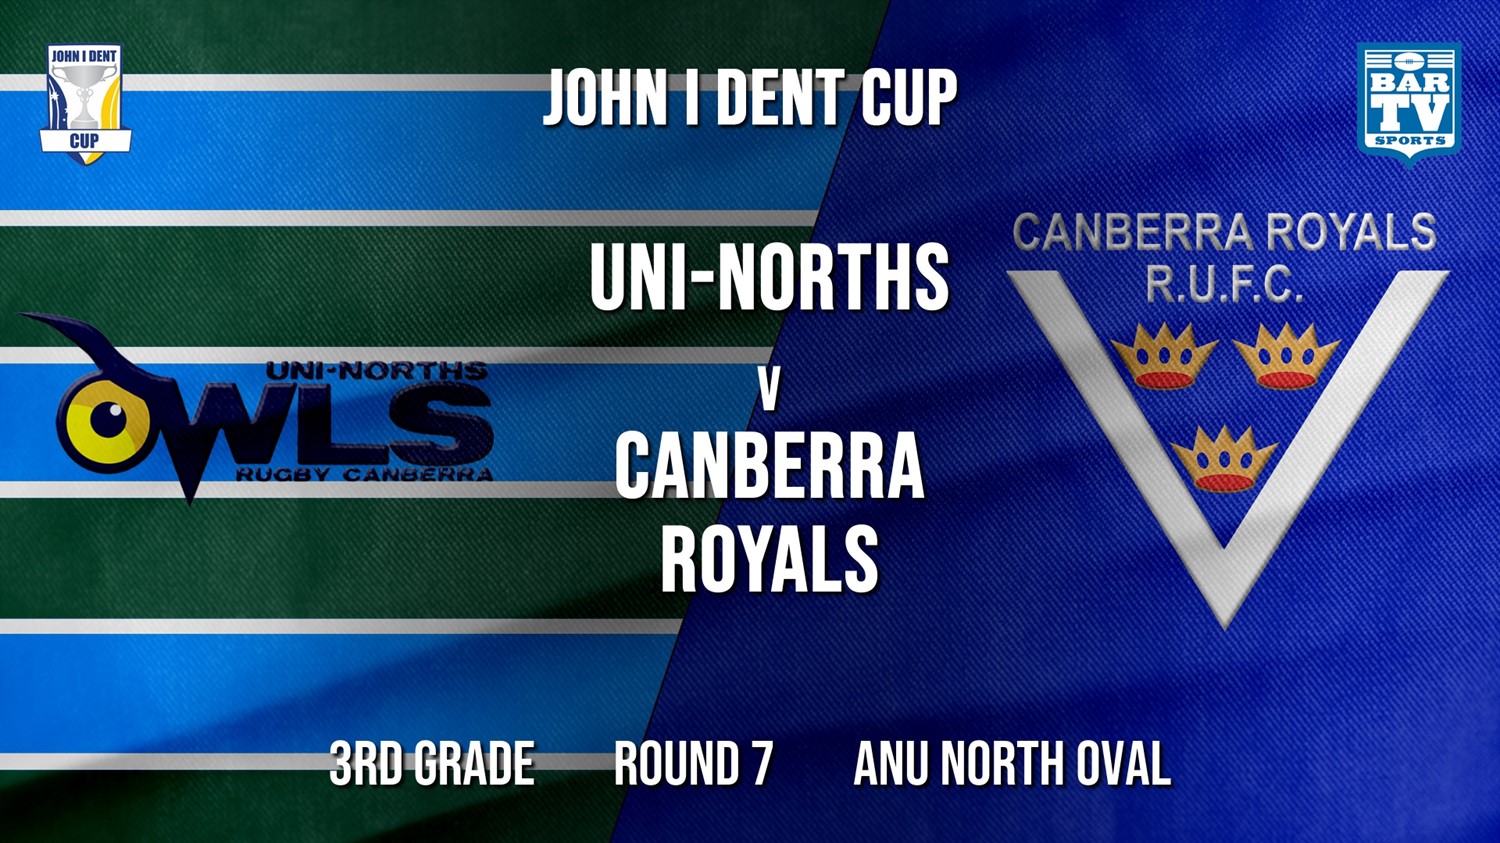 John I Dent Round 7 - 3rd Grade - UNI-Norths v Canberra Royals Minigame Slate Image